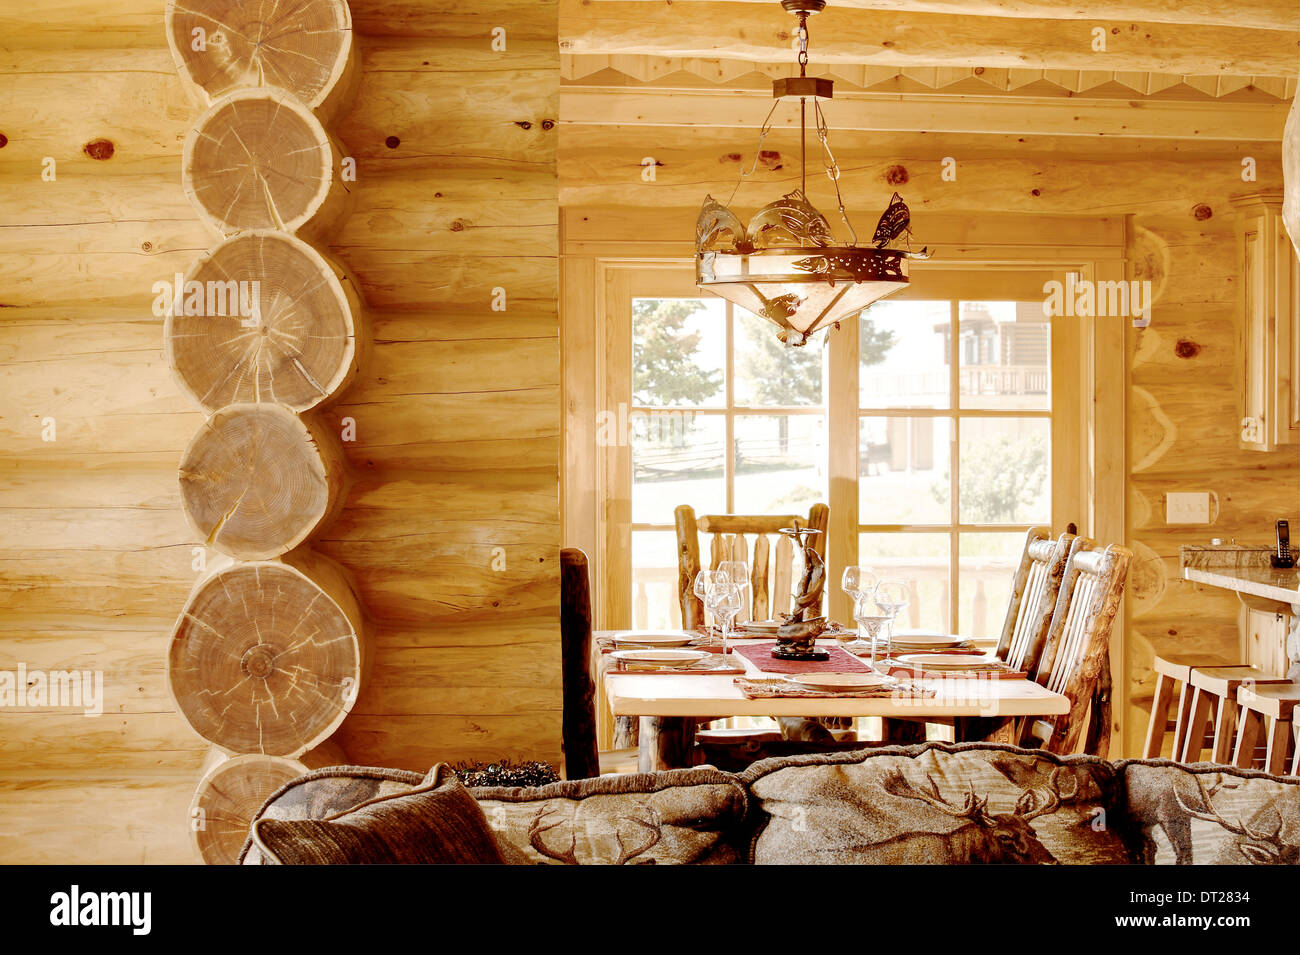 La salle à manger est aménagée dans une cabine moderne en bois, avec un décor rustique et du mobilier. Banque D'Images